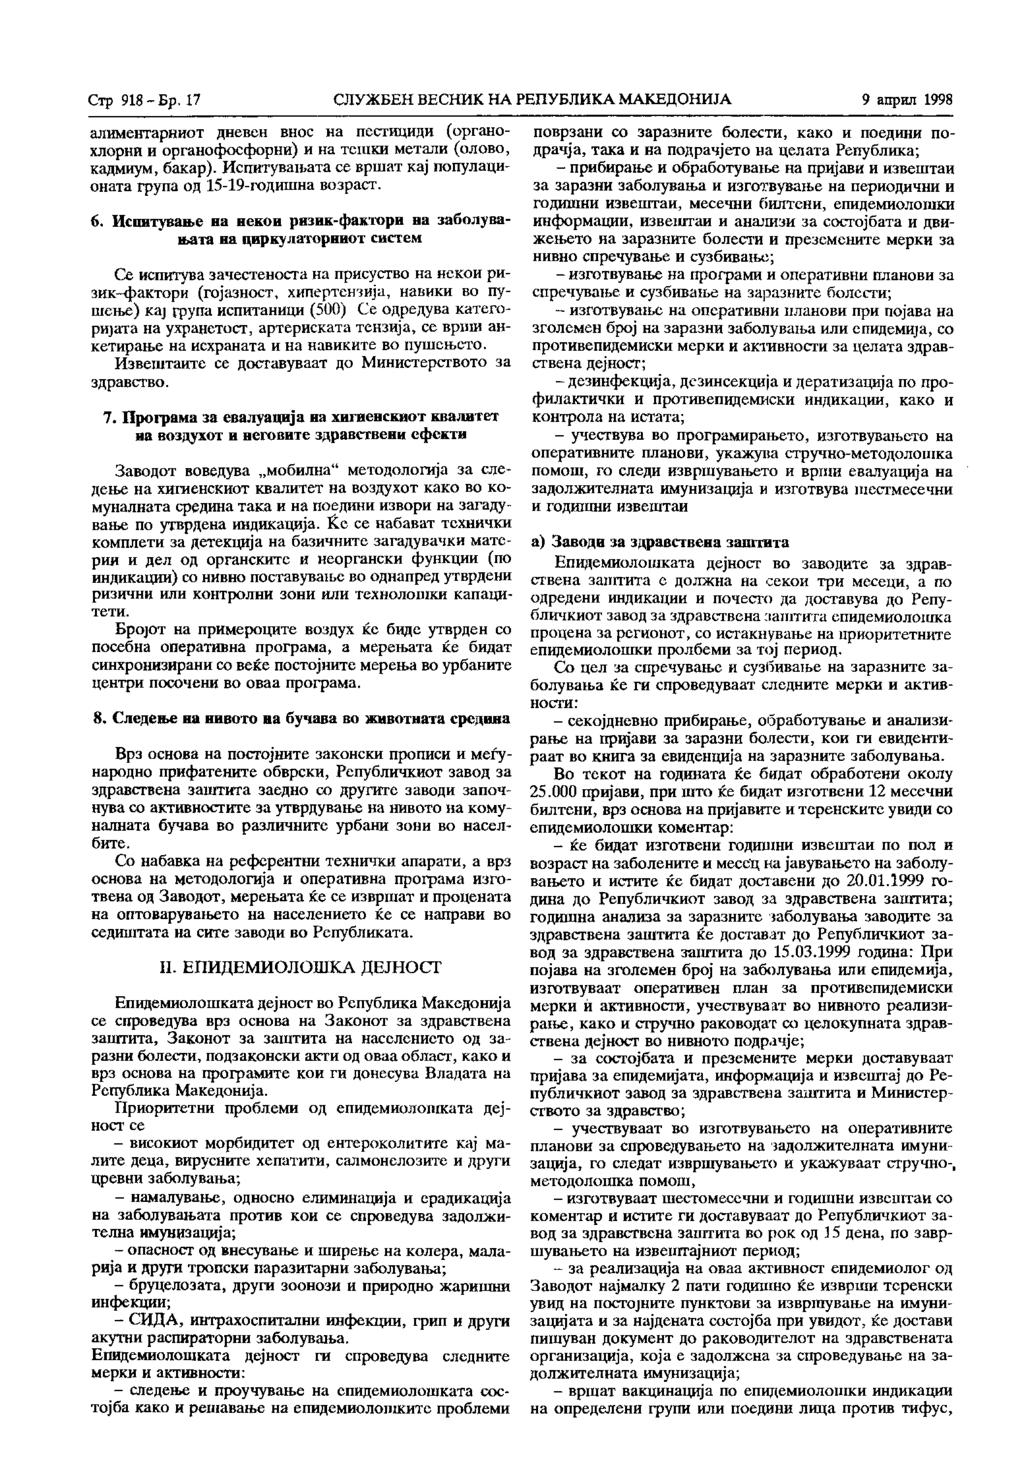 Стр. 918 - Бр. 17 СЛУЖБЕН ВЕСНИК НА РЕПУБЛИКА МАКЕДОНИЈА 9 април 1998 алиментарниот дневен внос на пестициди (органохлорни и органофосфорни) и на тешки метали (олово, кадмиум, бакар).